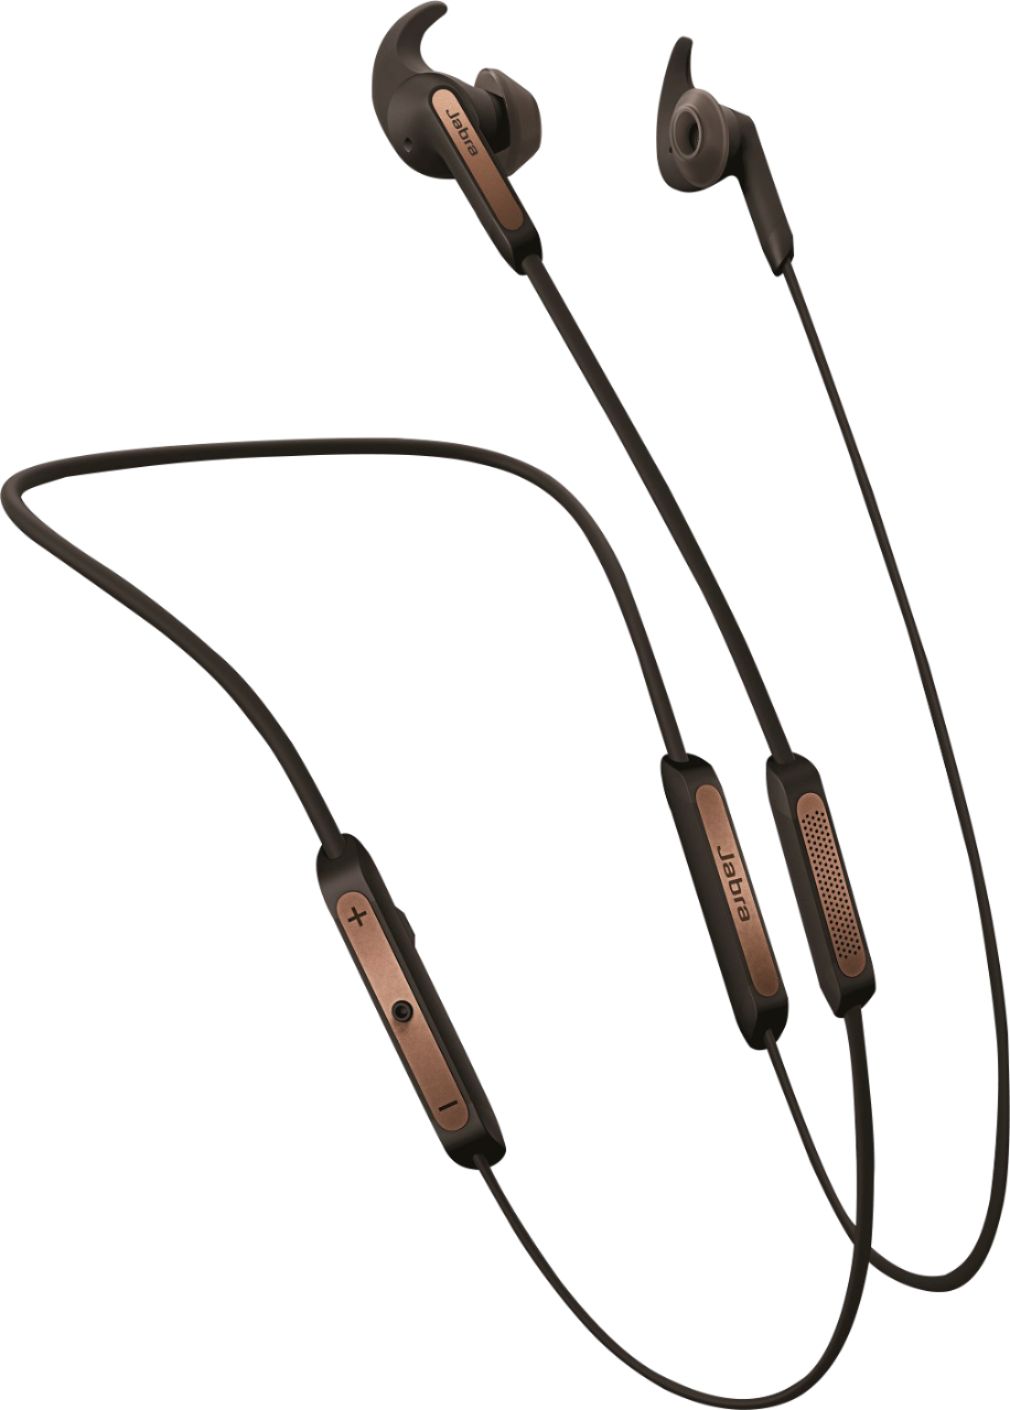 Jabra Elite 45e Wireless In-Ear Headphones Black - Best Buy